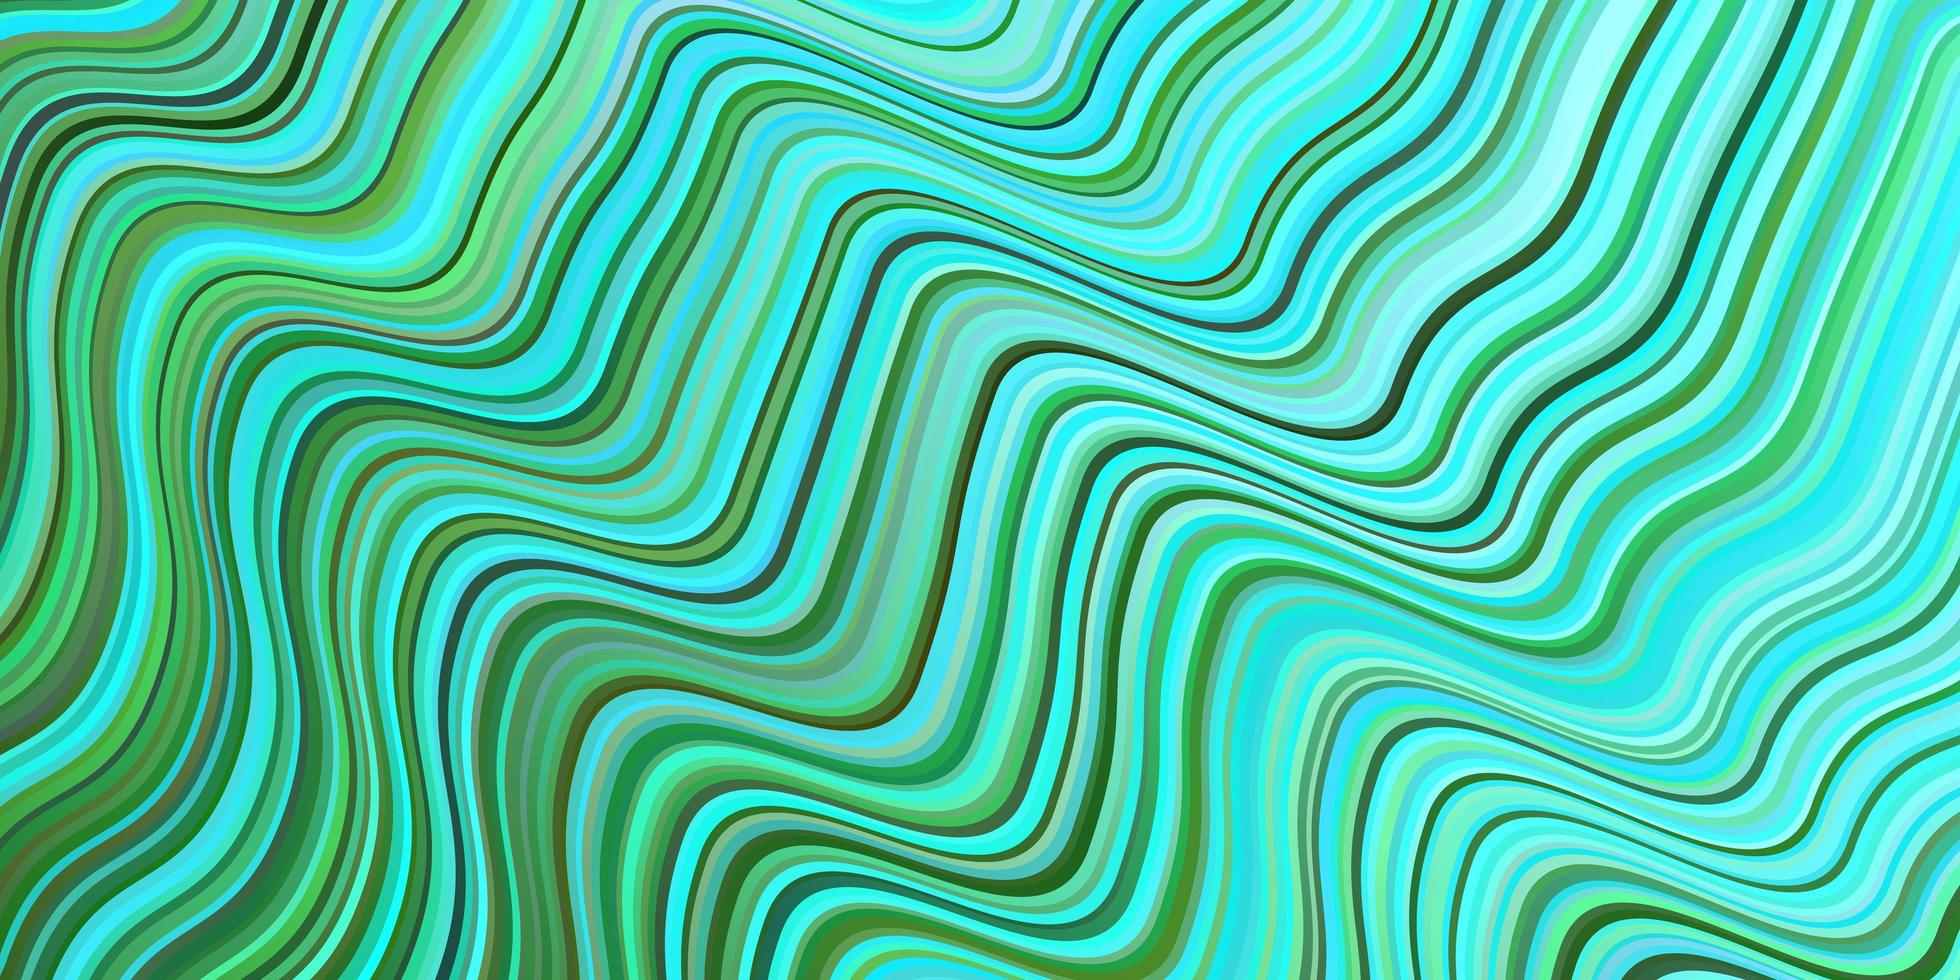 fundo vector azul e verde claro com linhas curvas.